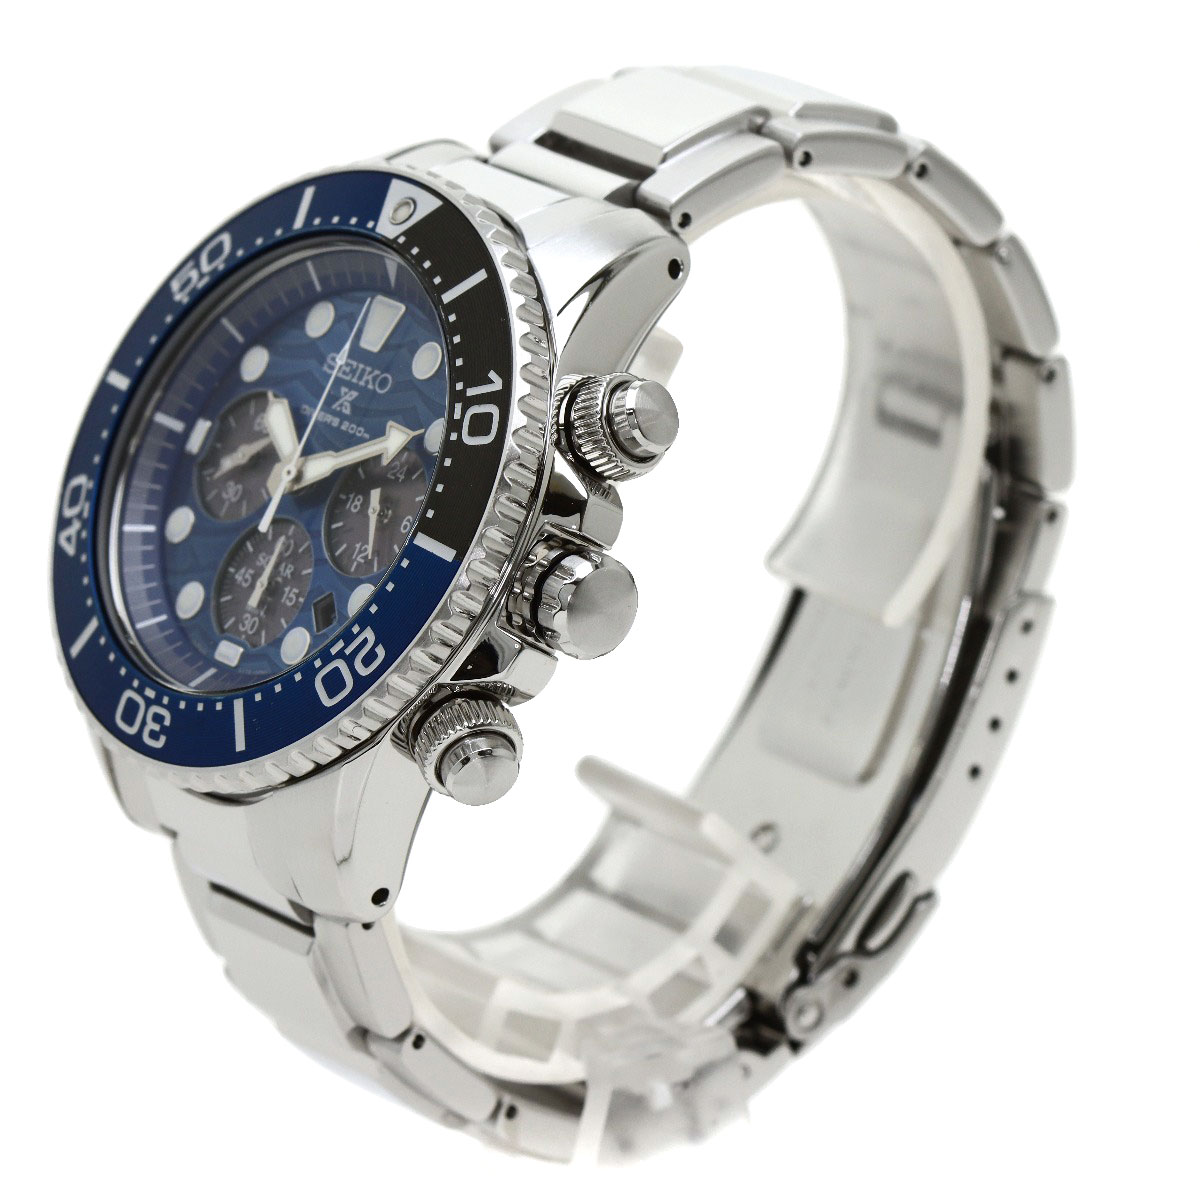 SEIKO PROSPEX ダイバー SBDL059 v175-0ev0 - 腕時計(アナログ)